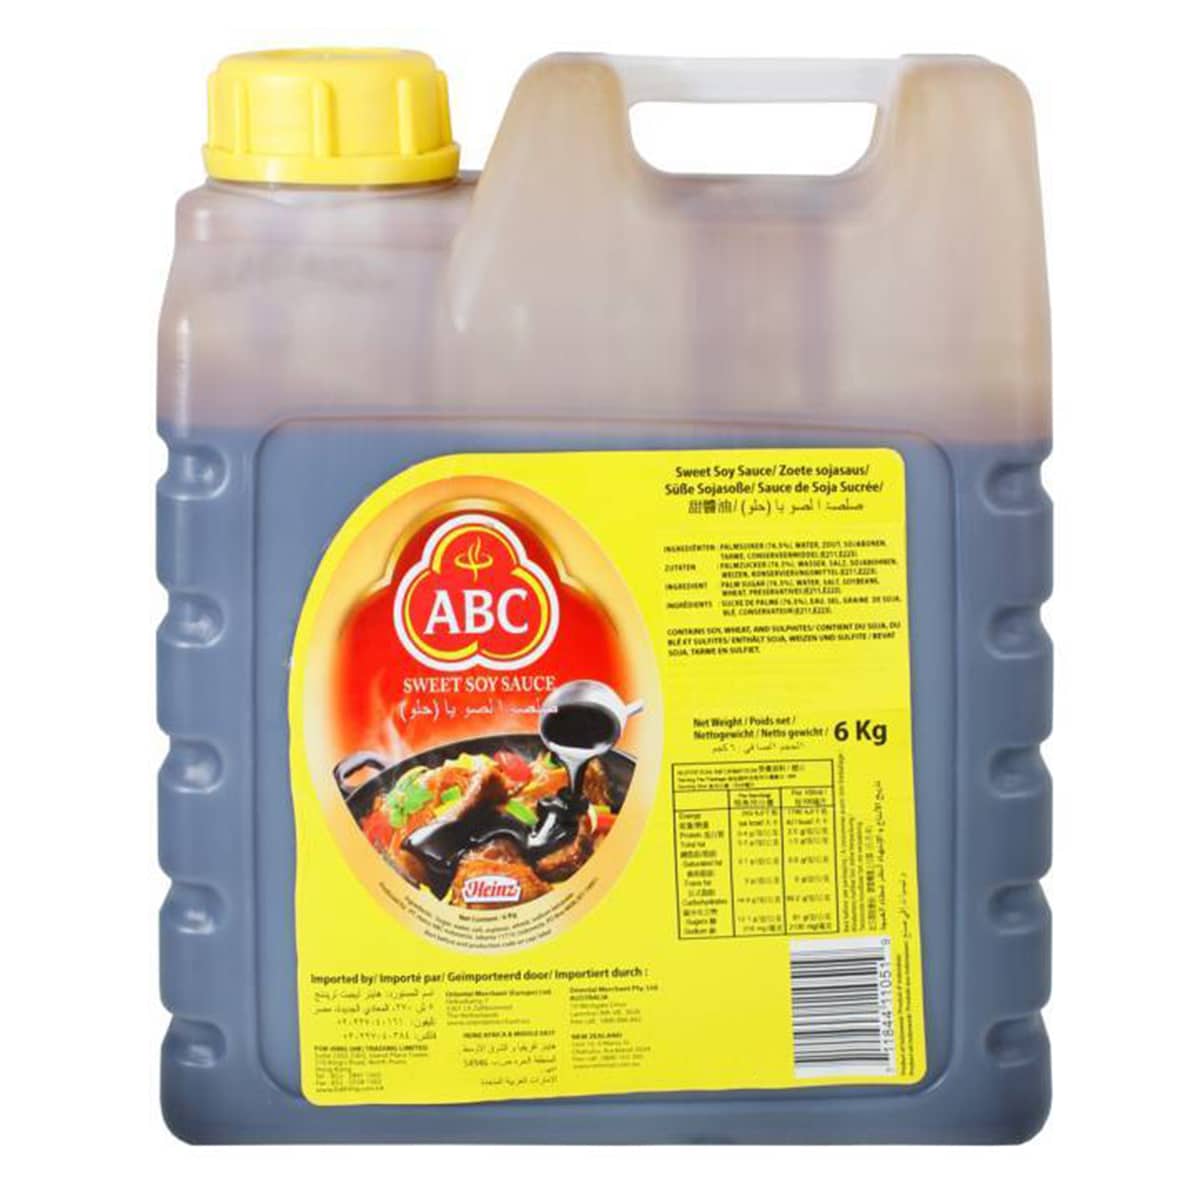 Buy ABC Sweet Soy Sauce (Kecap Manis) - 6 kg